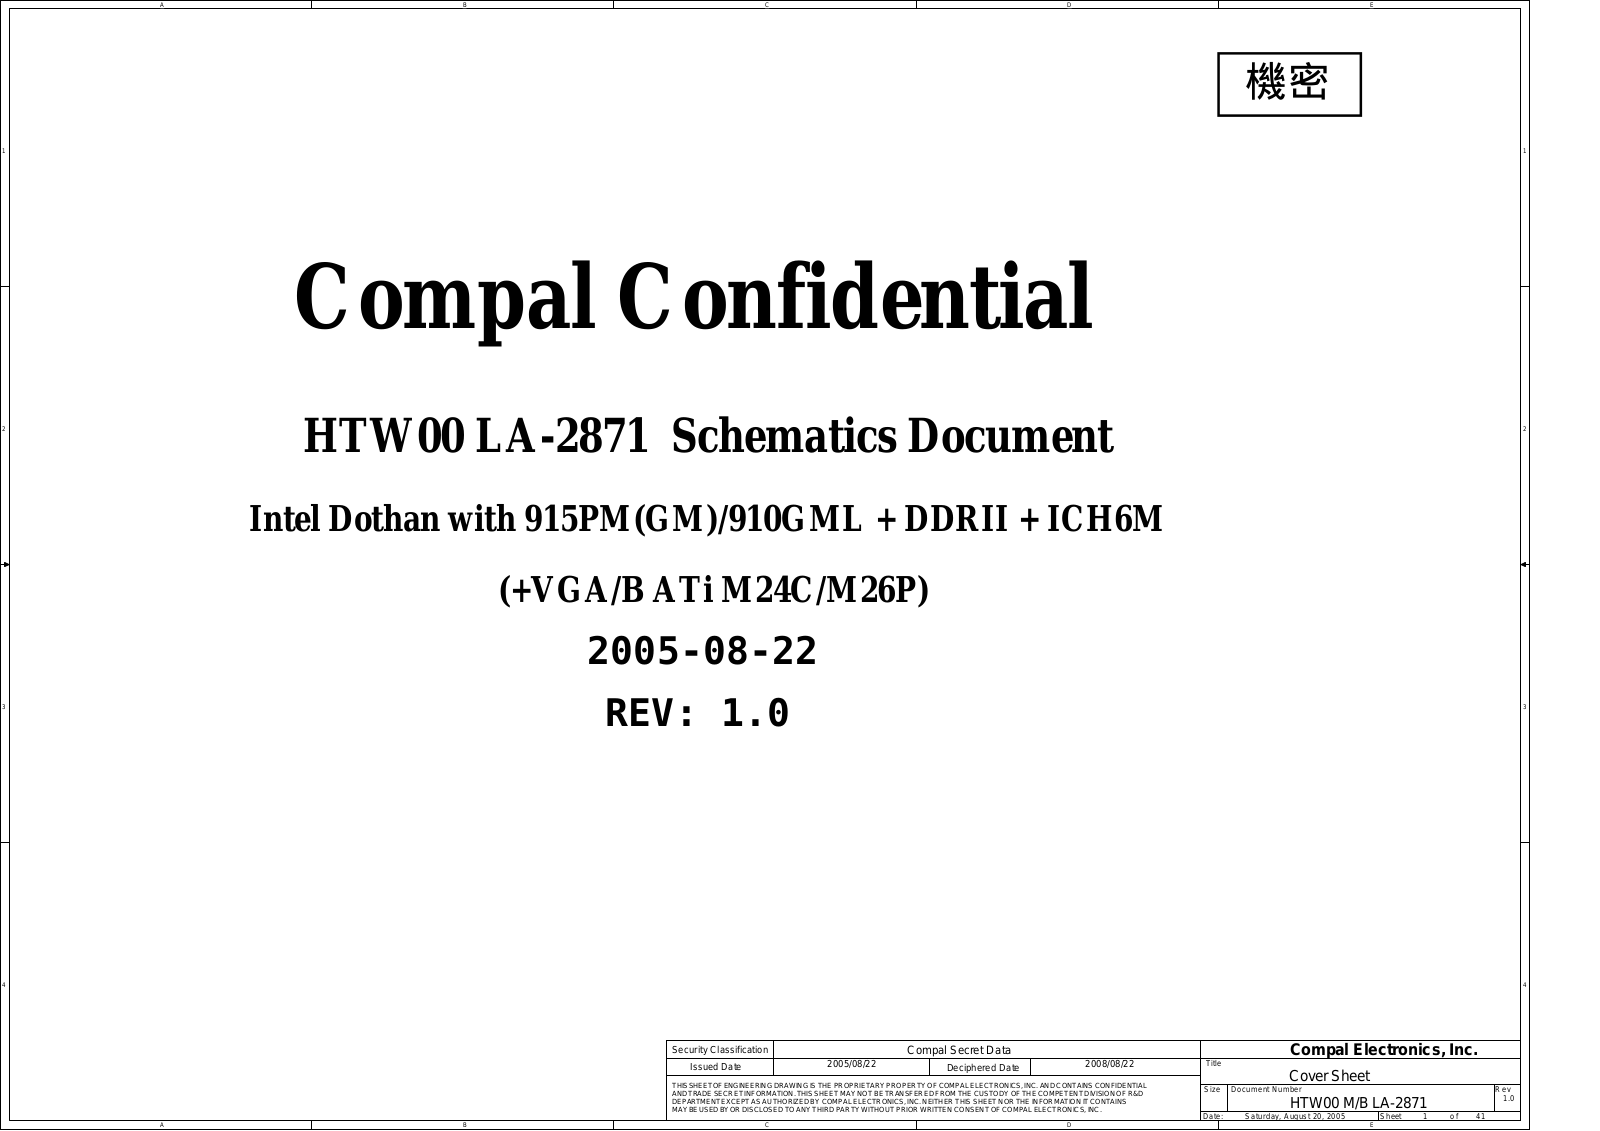 Toshiba HTW00 LA-2871 Schematics Document